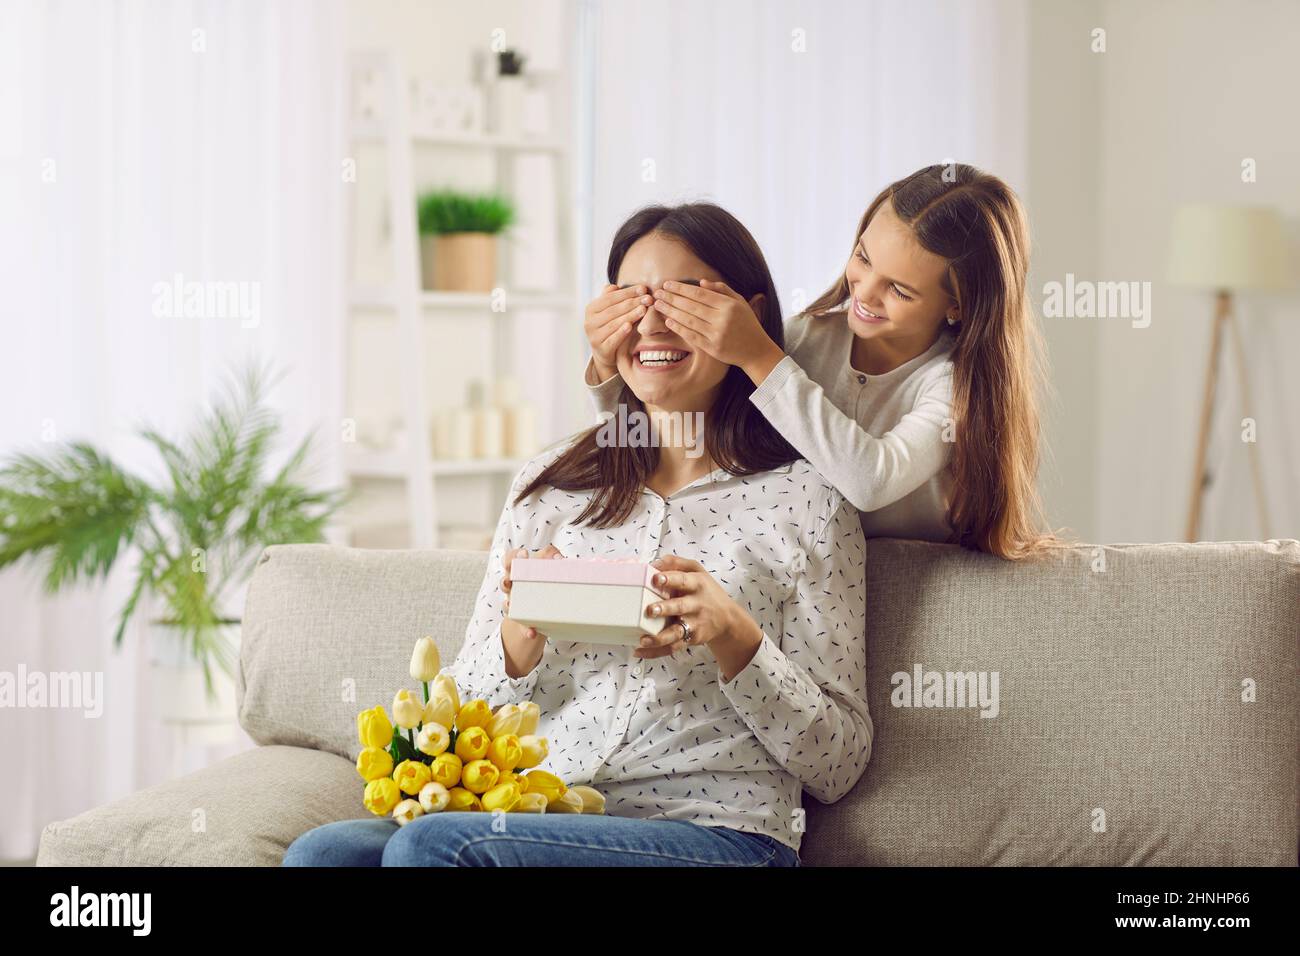 Die kleine Tochter bedeckt die Augen ihrer Mutter, als sie ihr am Muttertag ein Geschenk macht Stockfoto